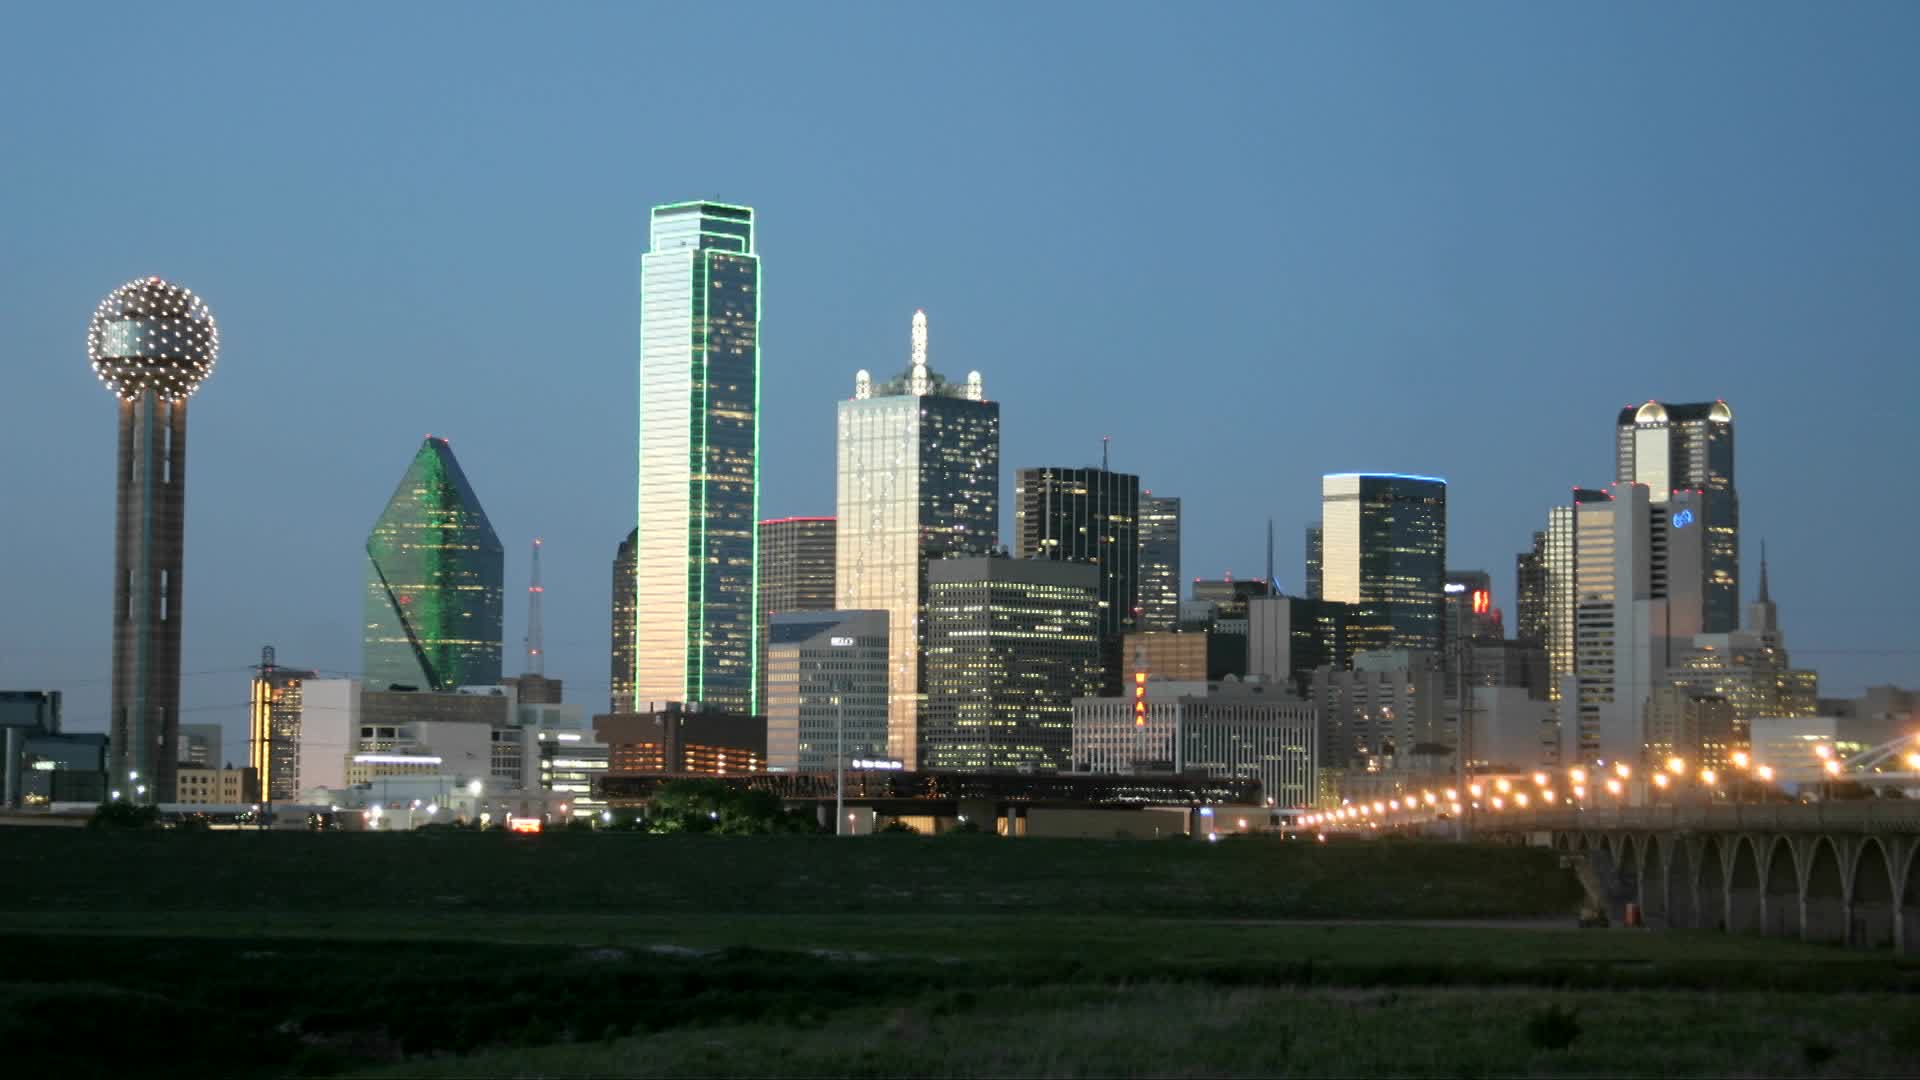 City Lights Illuminate The Dallas Skyline At Night Stock